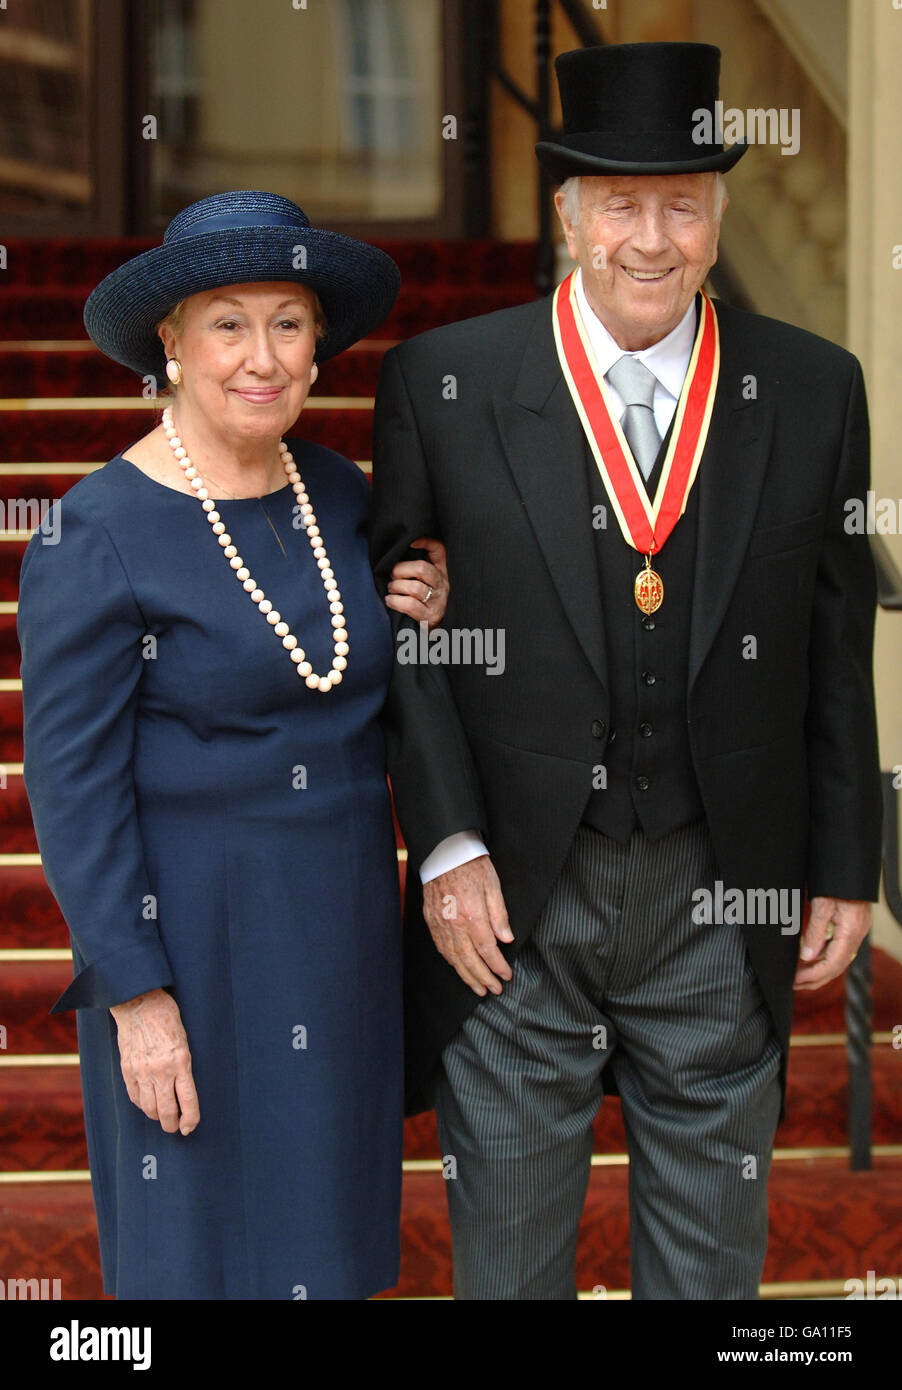 Il pianista e compositore del Blind Jazz Sir George Shearing e sua moglie posarono il tosare a Buckingham Palace dopo aver raccolto la sua Knighthood dalla Regina Elisabetta II durante una cerimonia di investitura. Foto Stock